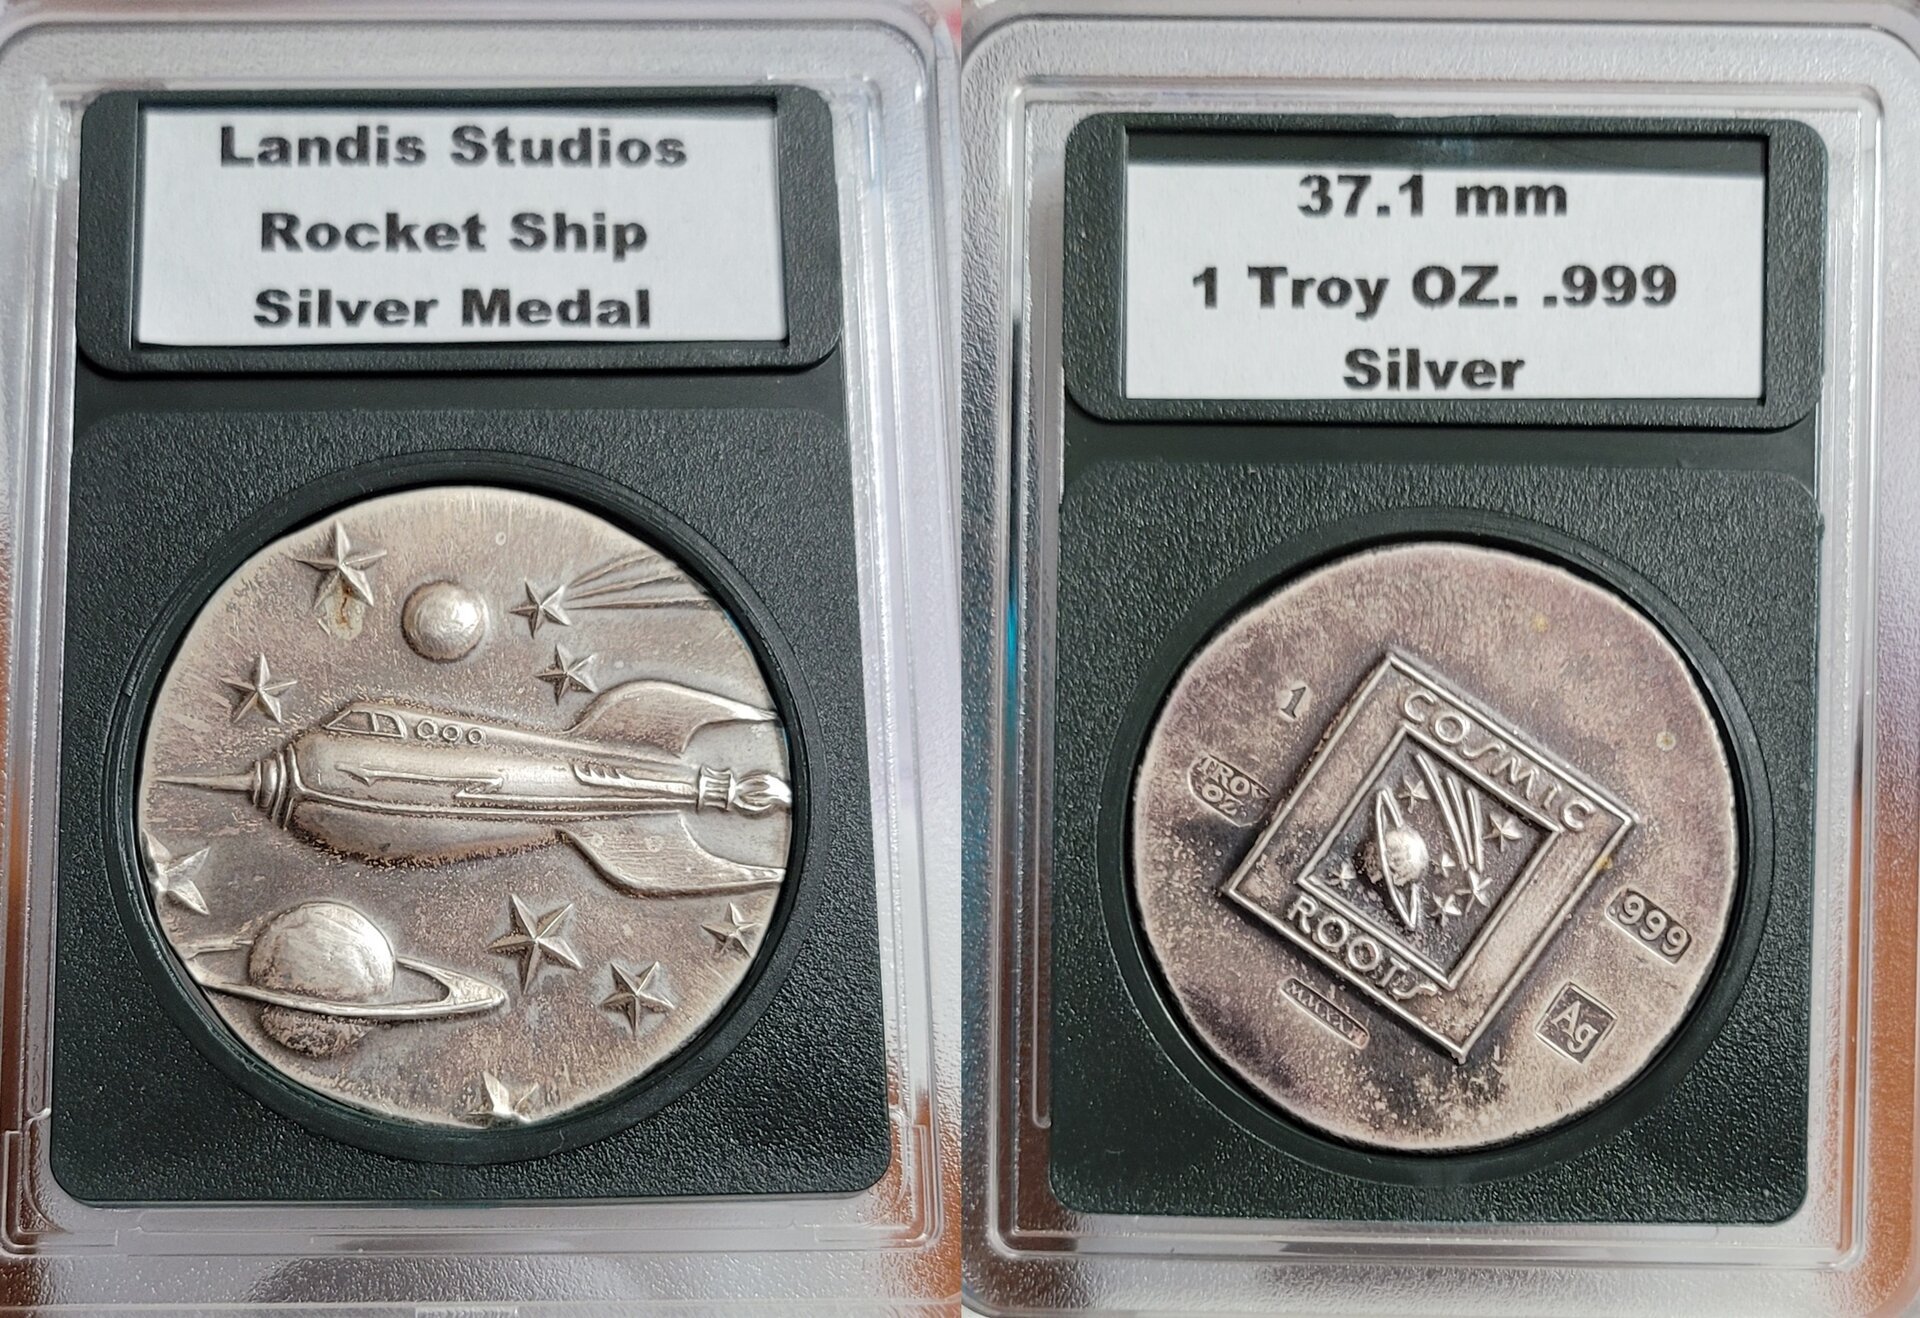 Rocket Ship Silver Medal 3x-horz.jpg